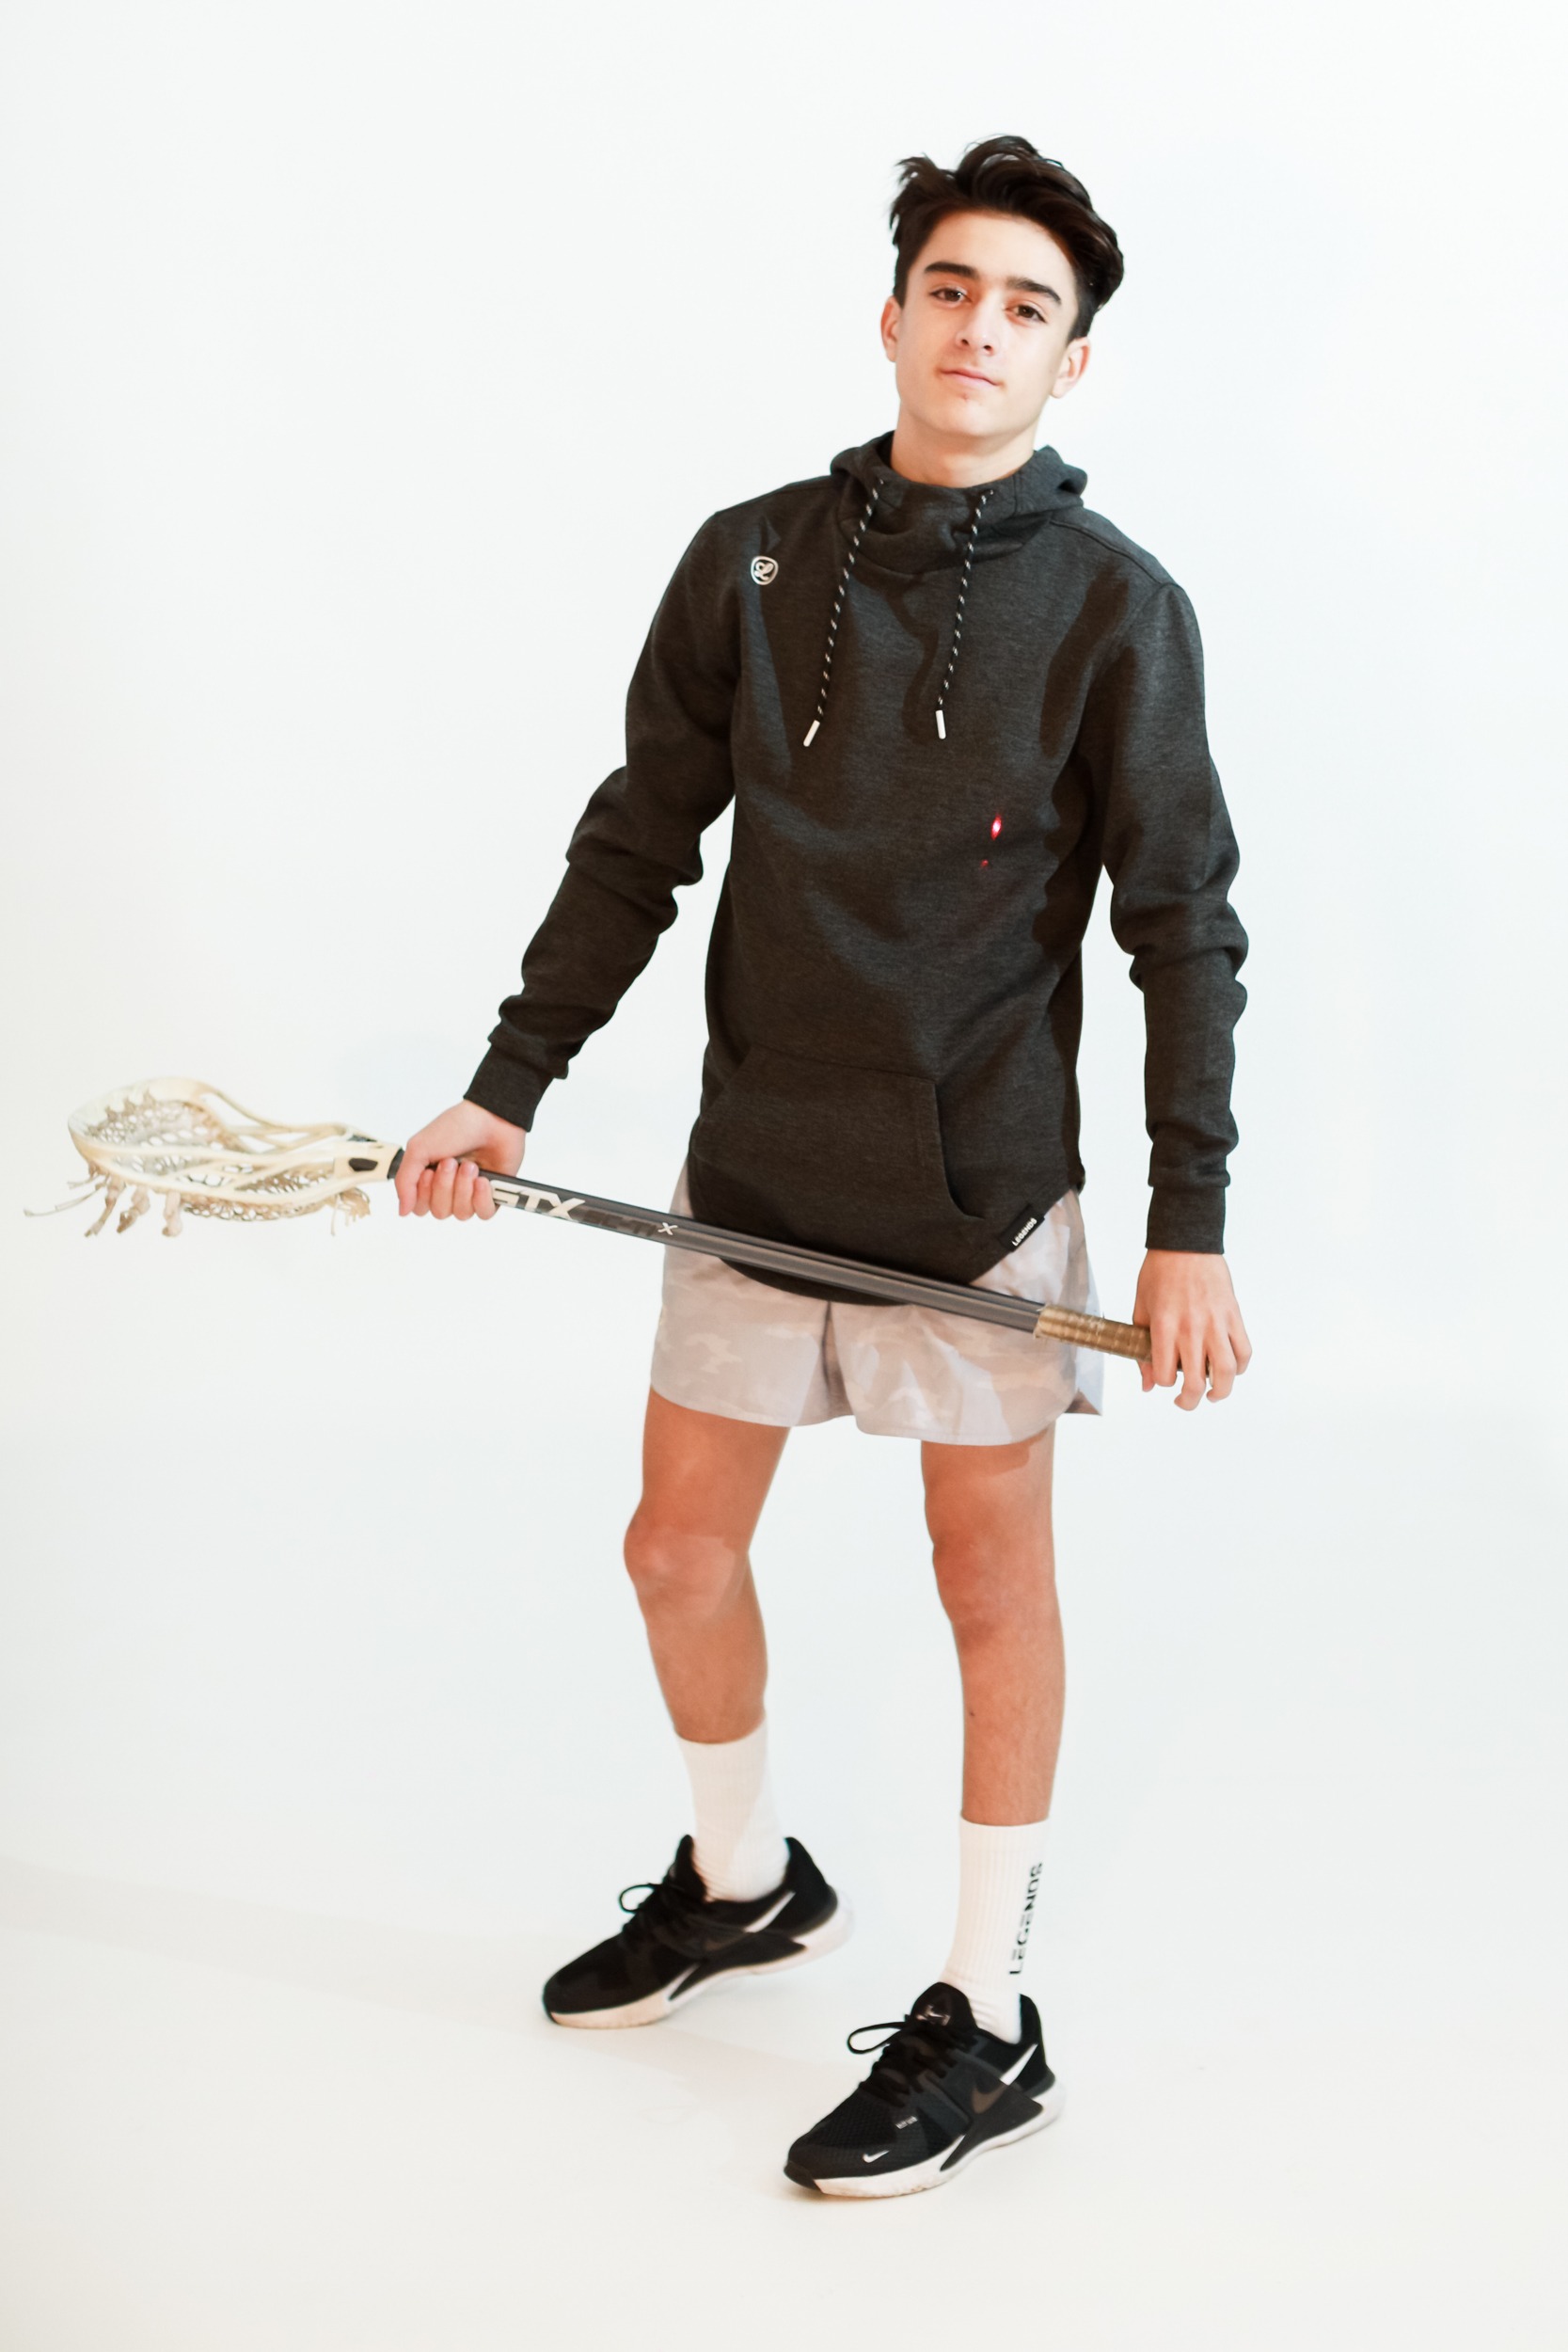 boy lacrosse player